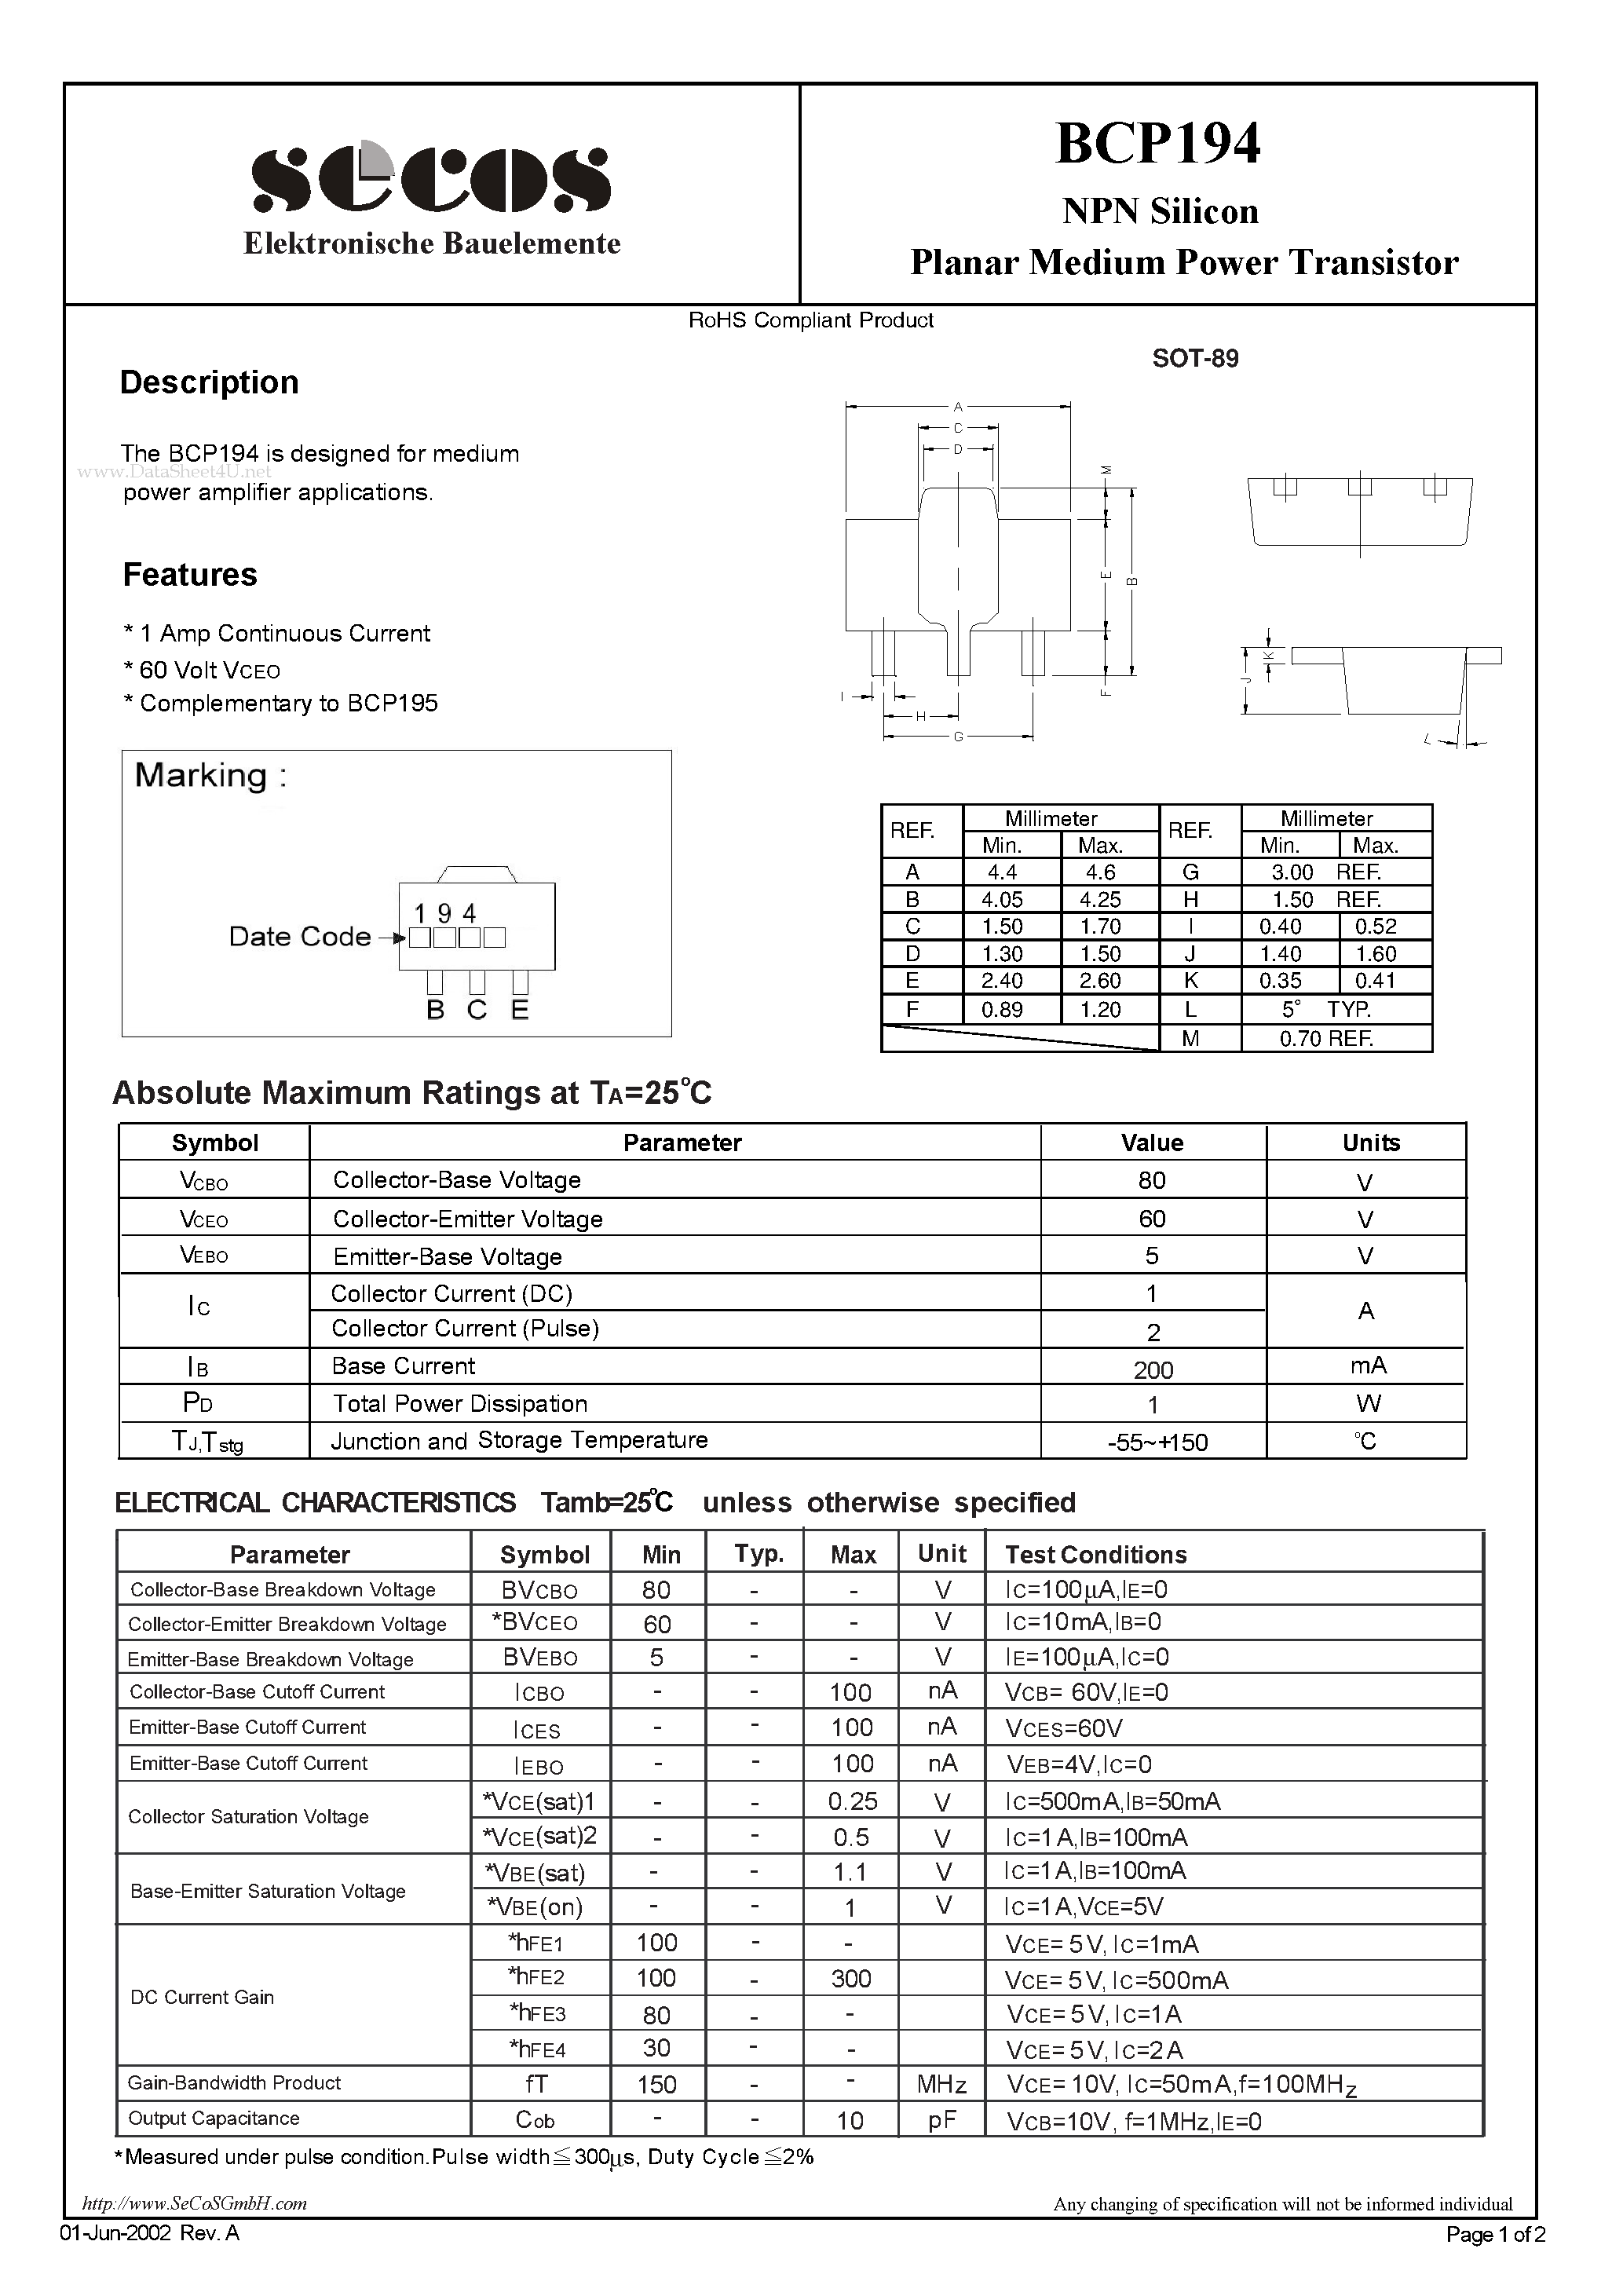 Даташит BCP194-Planar Medium Power Transistor страница 1